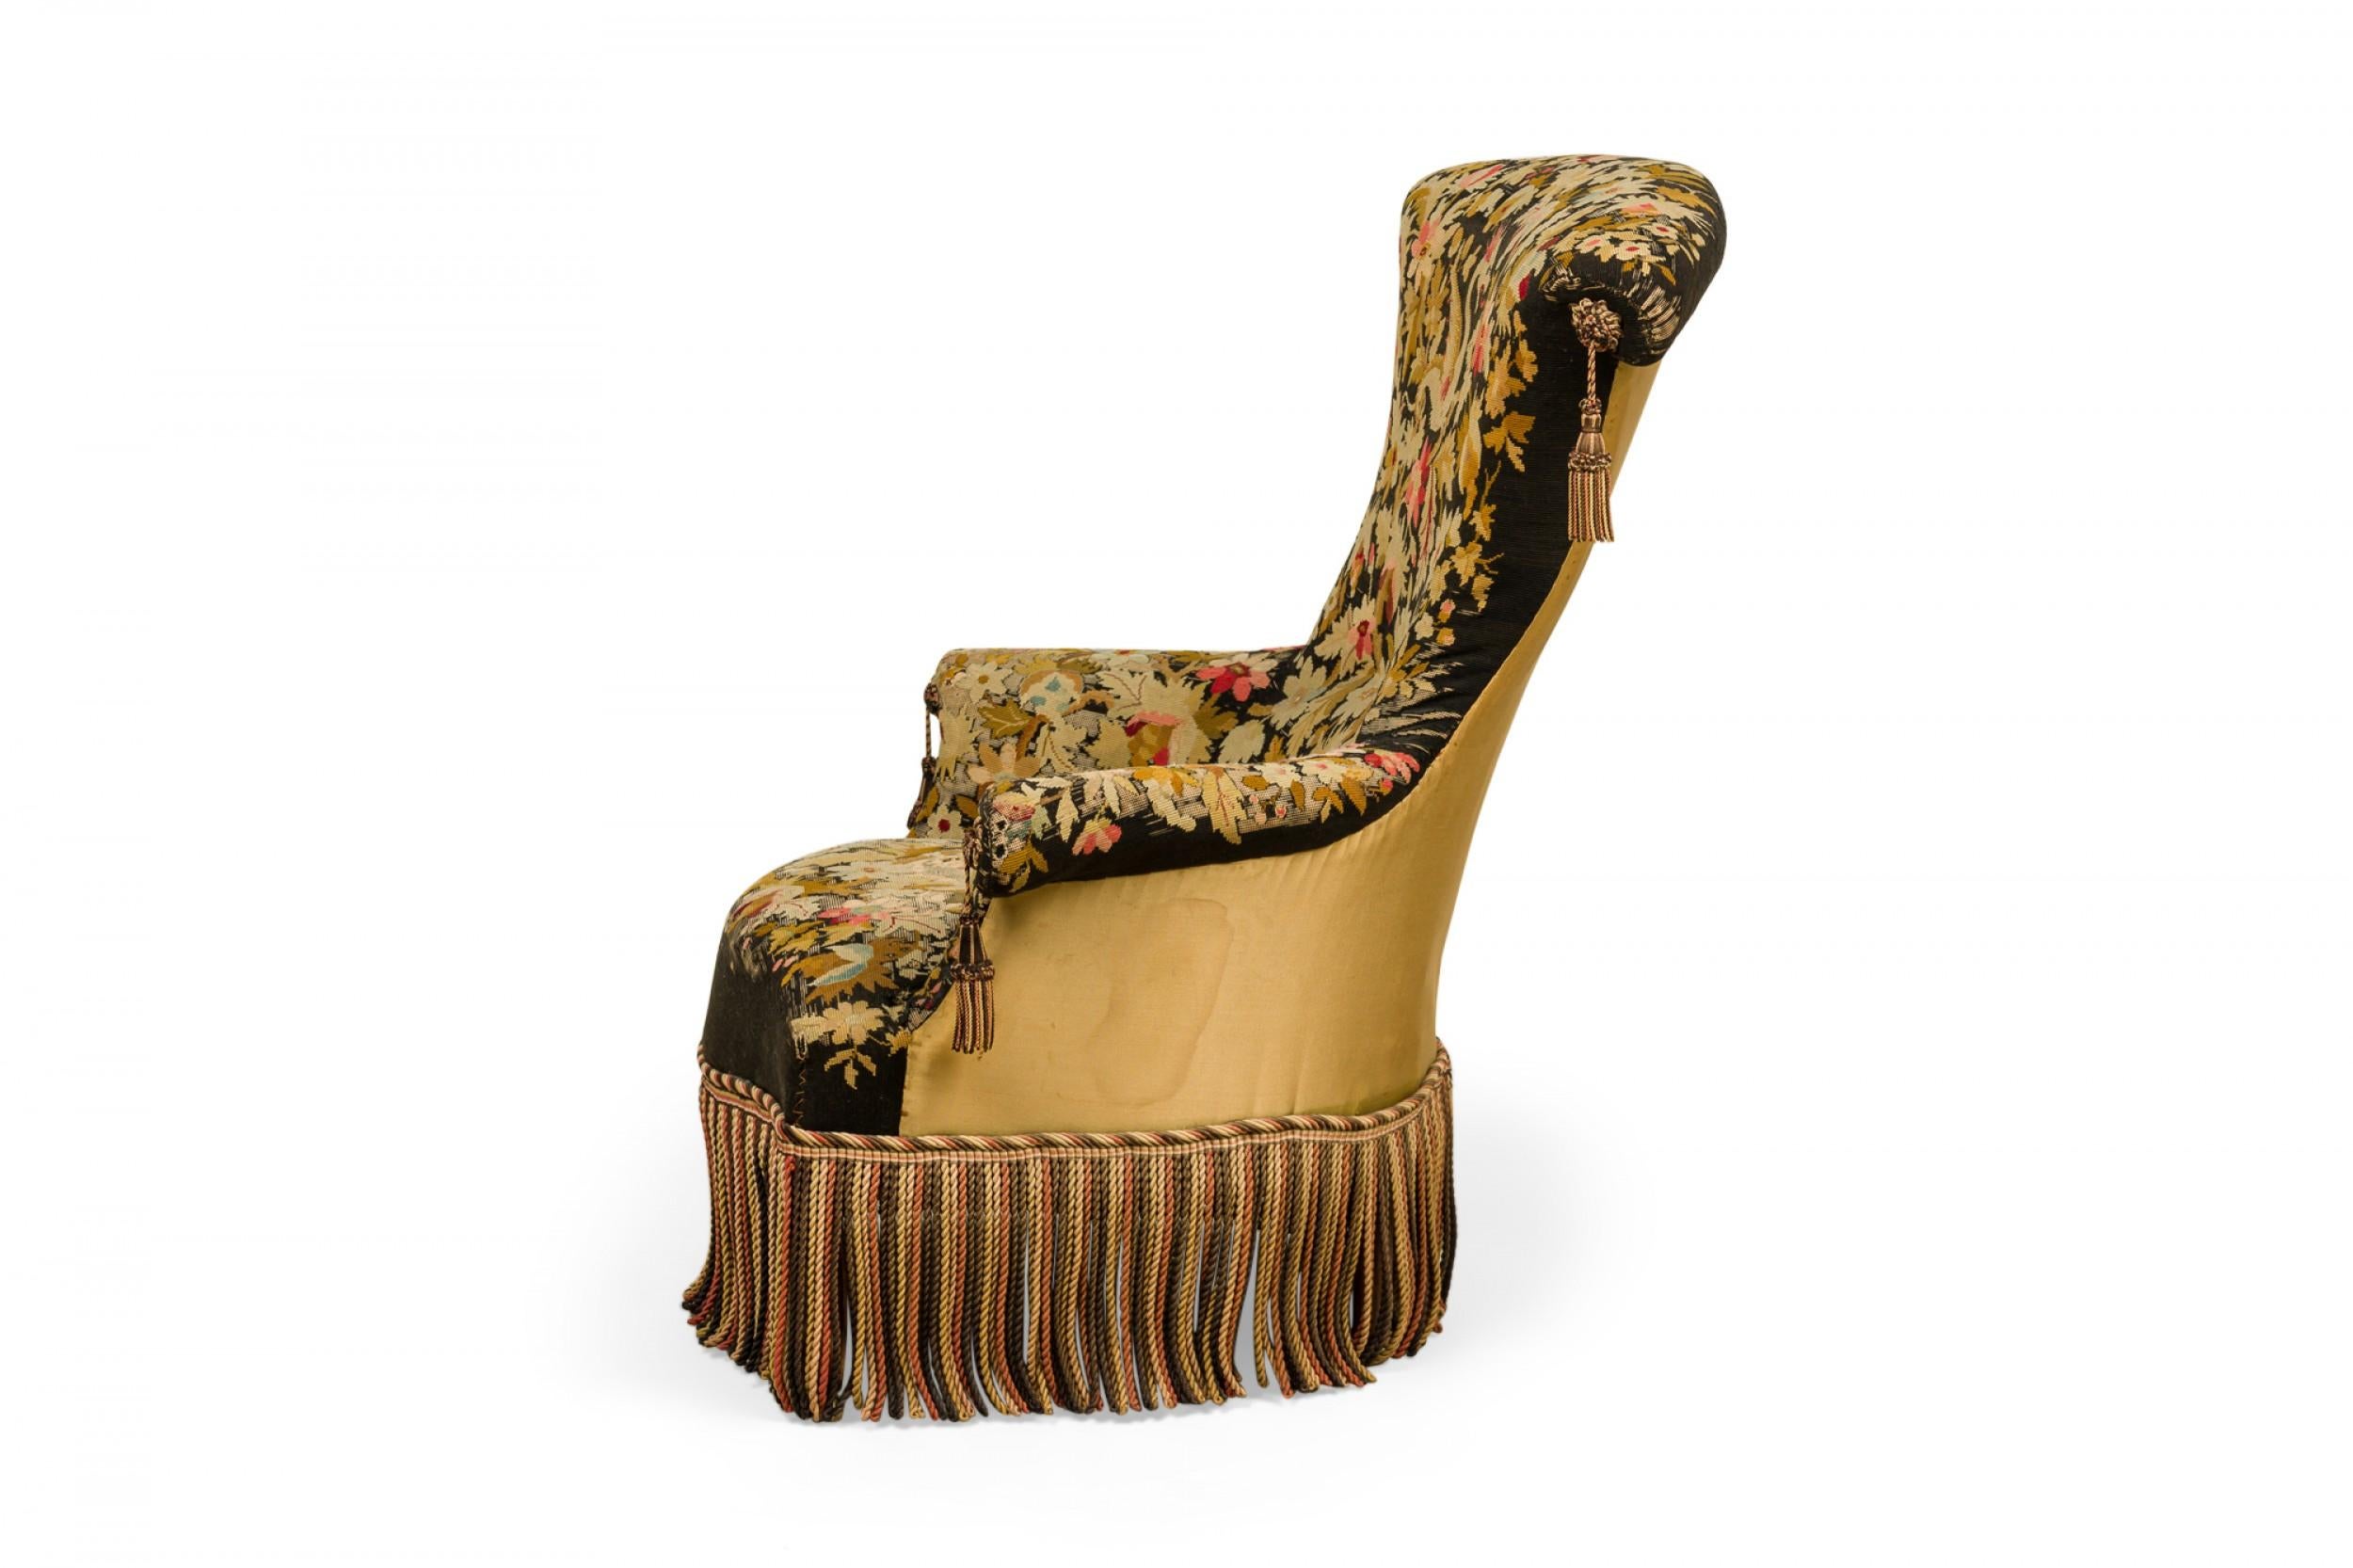 Französischer viktorianischer Sessel mit fächerförmiger Rückenlehne, bezogen mit aufwändigem Nadelspitze-Stoff, auf dem ein Drache inmitten grüner und rosafarbener Blumen vor schwarzem Hintergrund abgebildet ist, mit dekorativen Quasten und einem